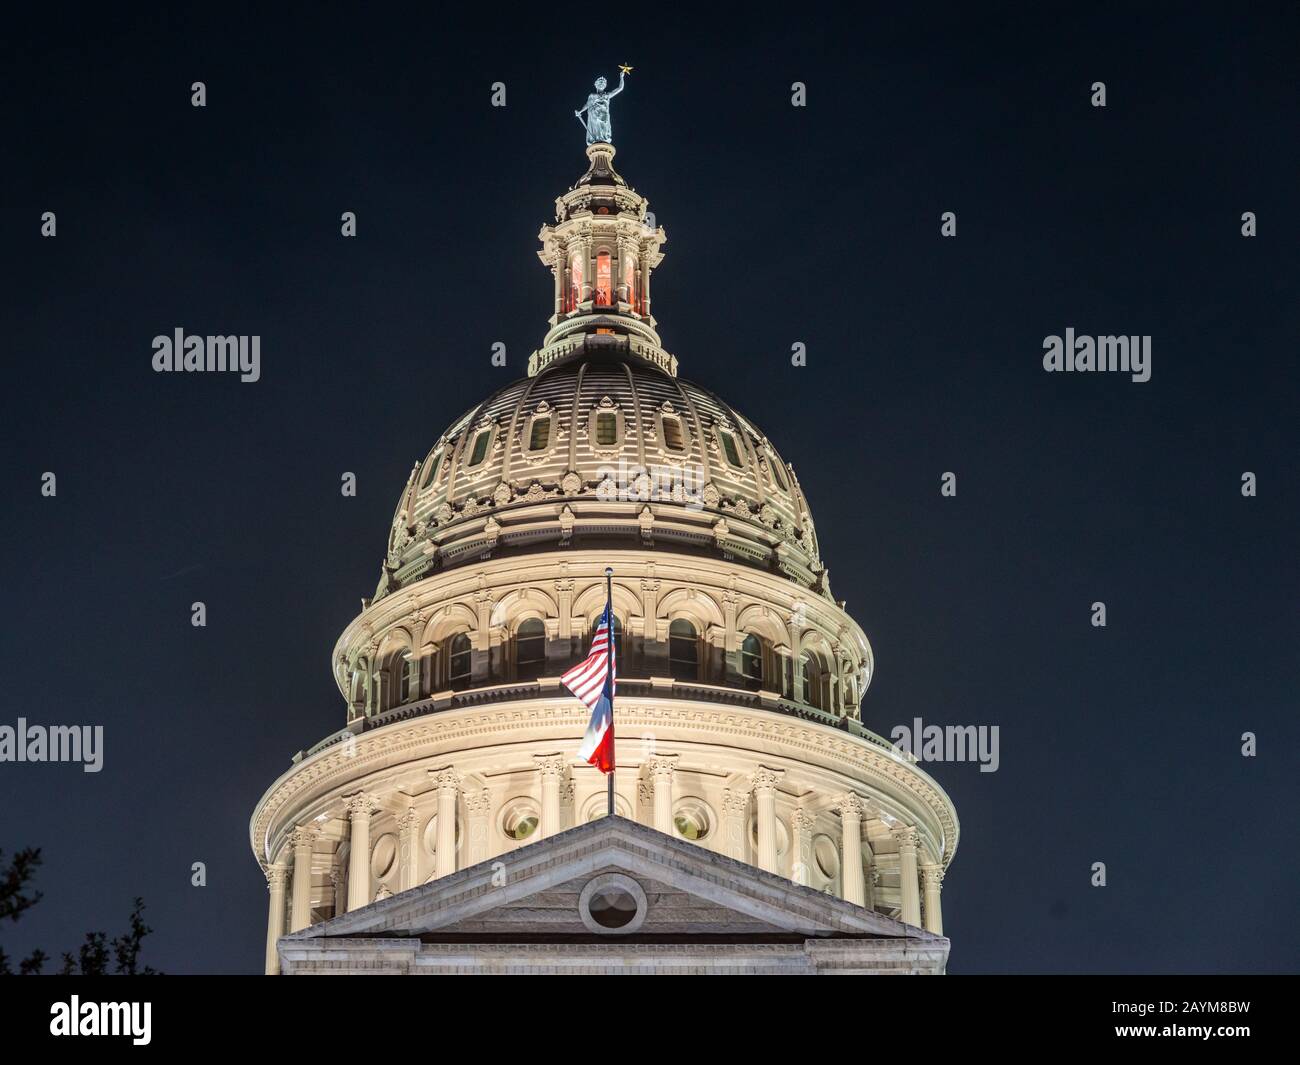 State Capitol, scène de nuit, dôme, Austin, Texas, États-Unis Banque D'Images